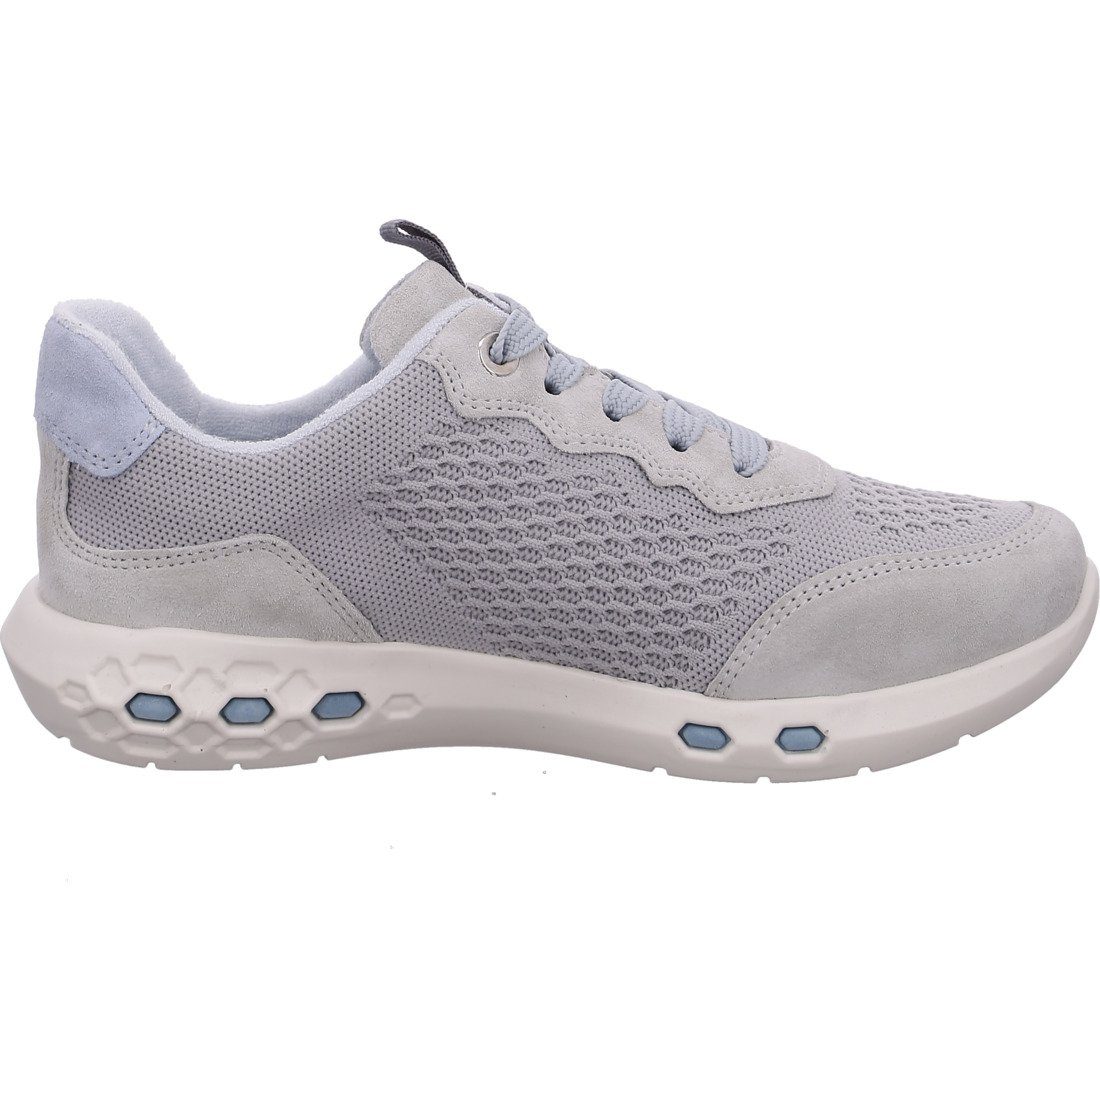 Ara Damen - Ara Sneaker 047846 Sneaker Schuhe, grau Jumper Materialmix